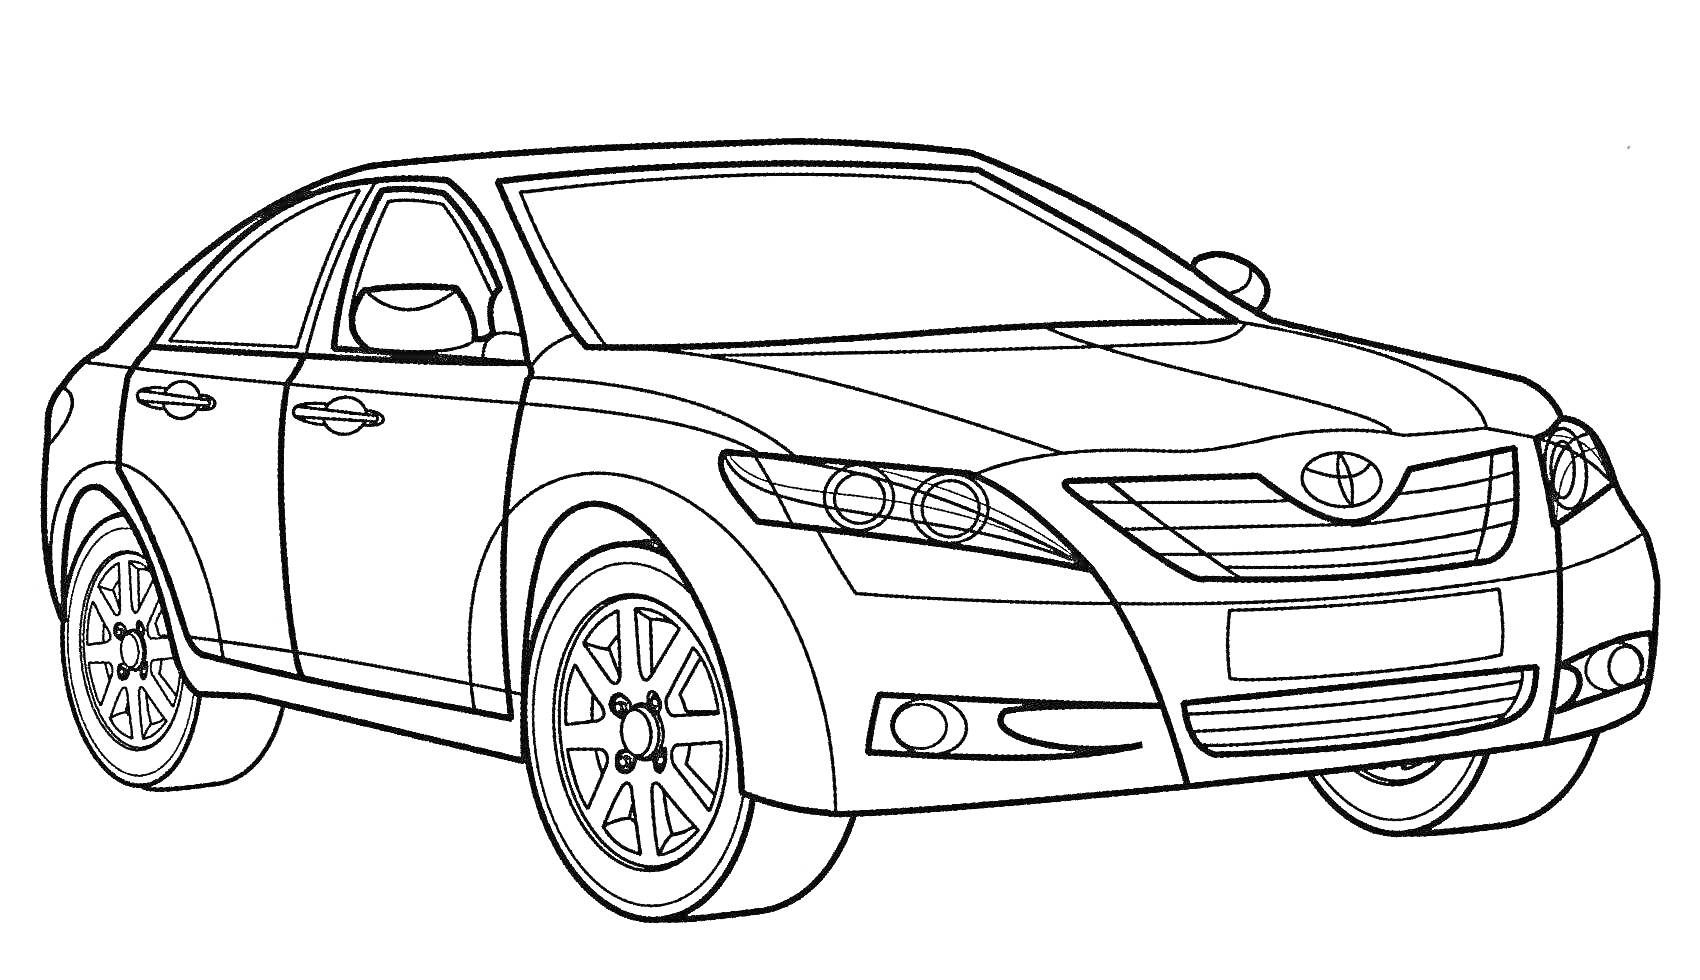 Раскраска Легковой автомобиль с четырьмя дверями и логотипом Toyota, вид спереди под углом